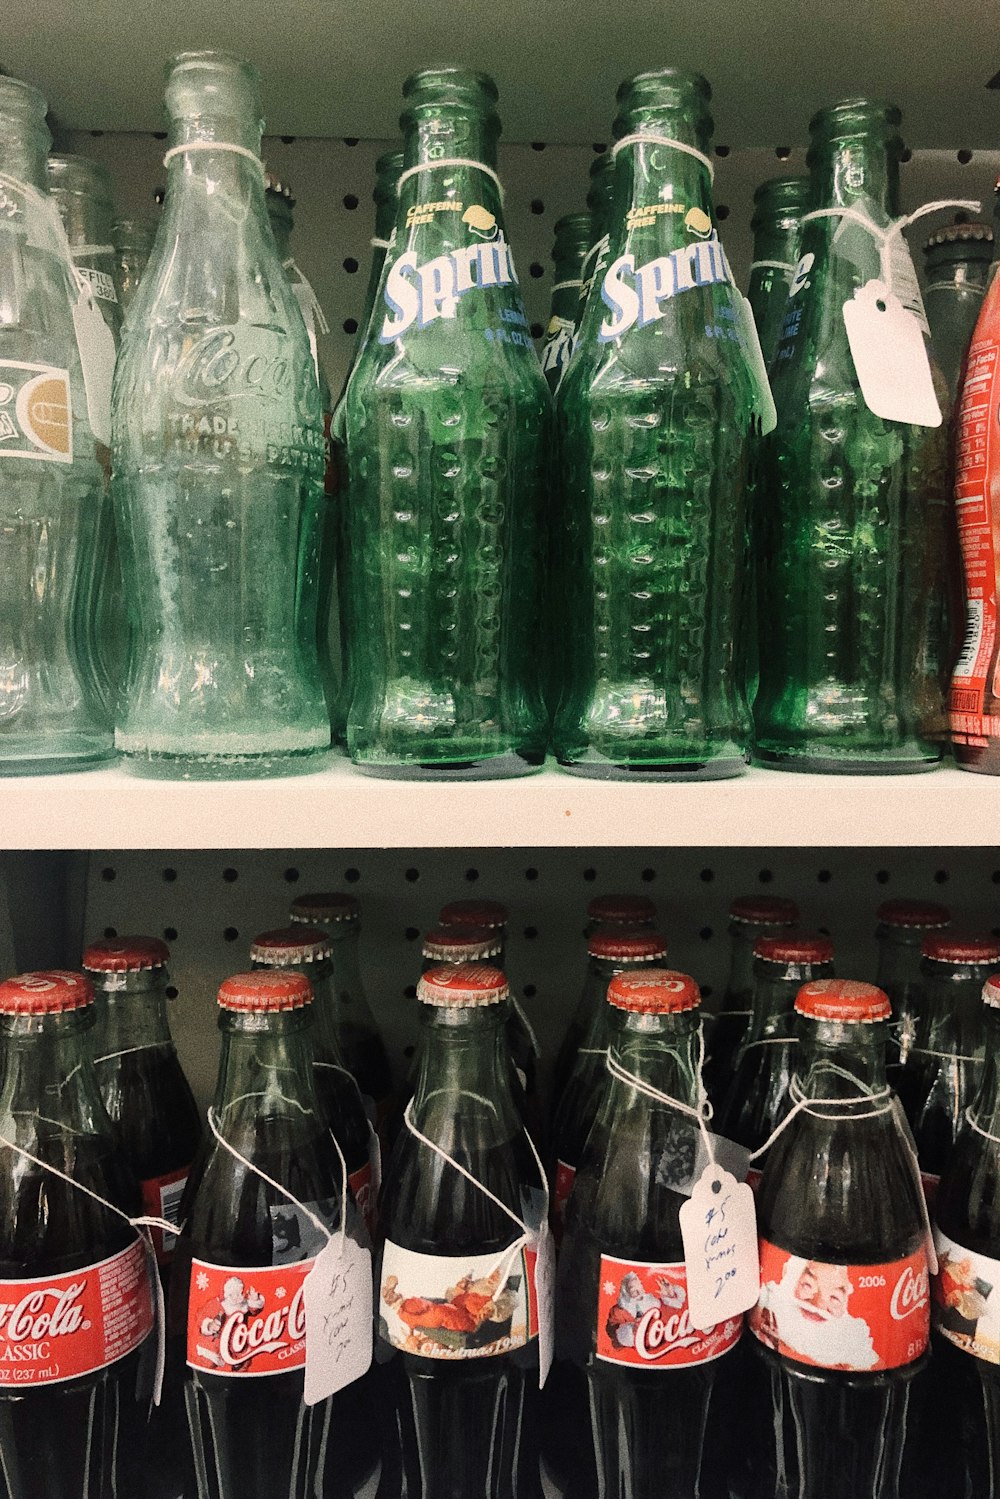 Botella de Coca-Cola y Sprite dentro del estante